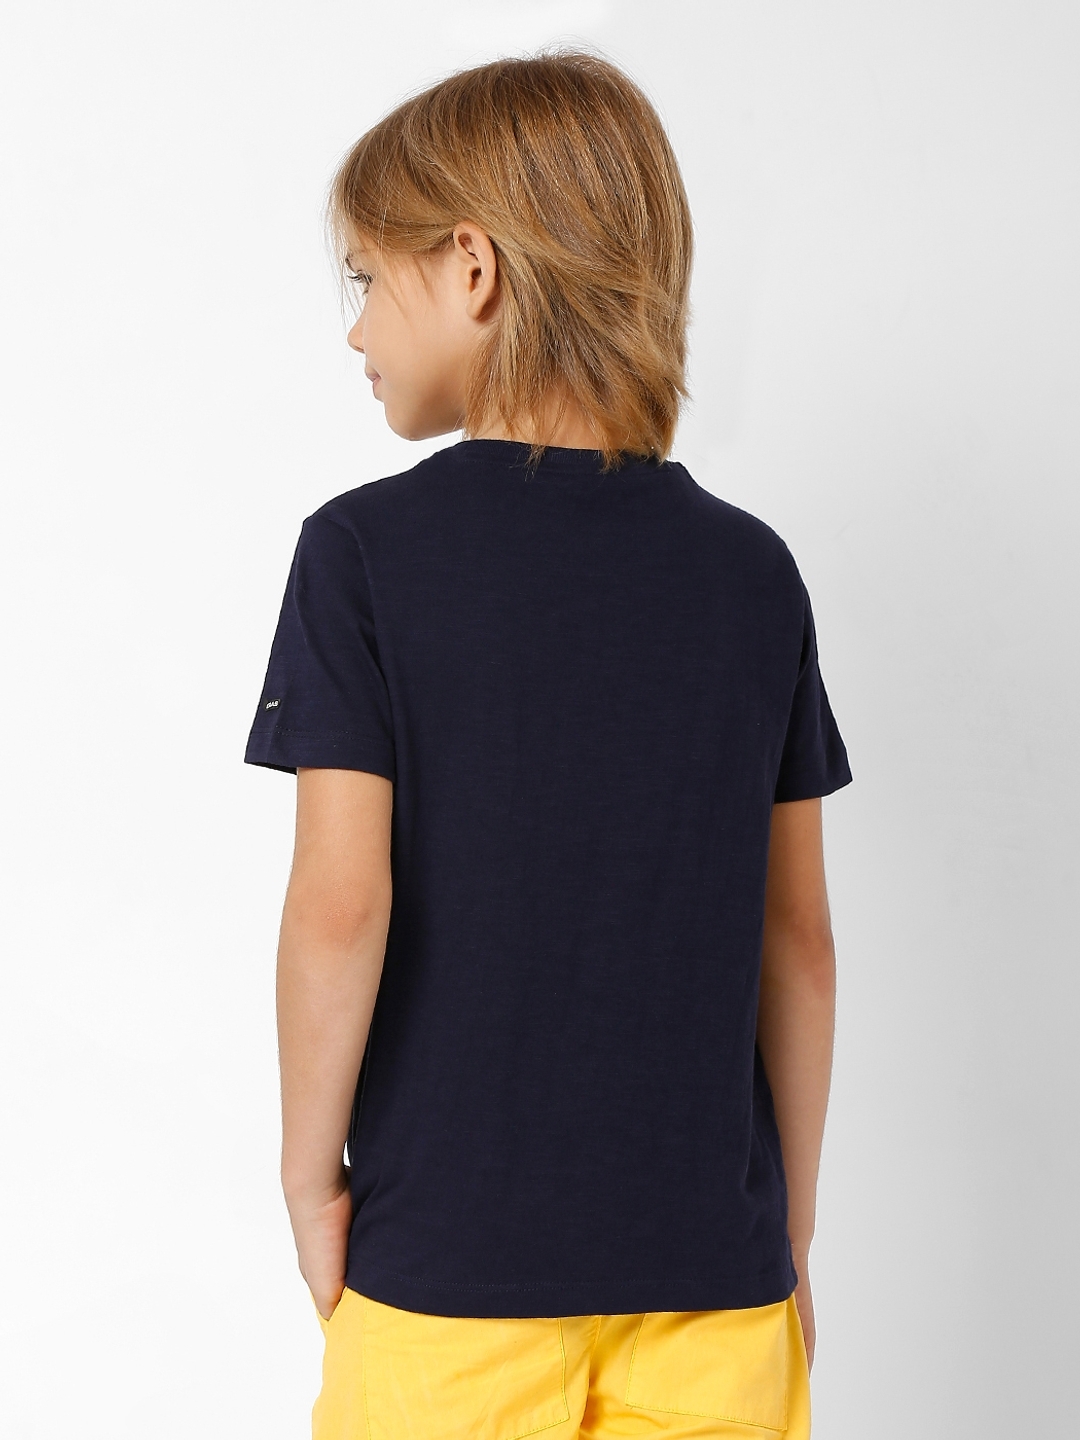 Scuba Splatter Round-Neck T-shirt